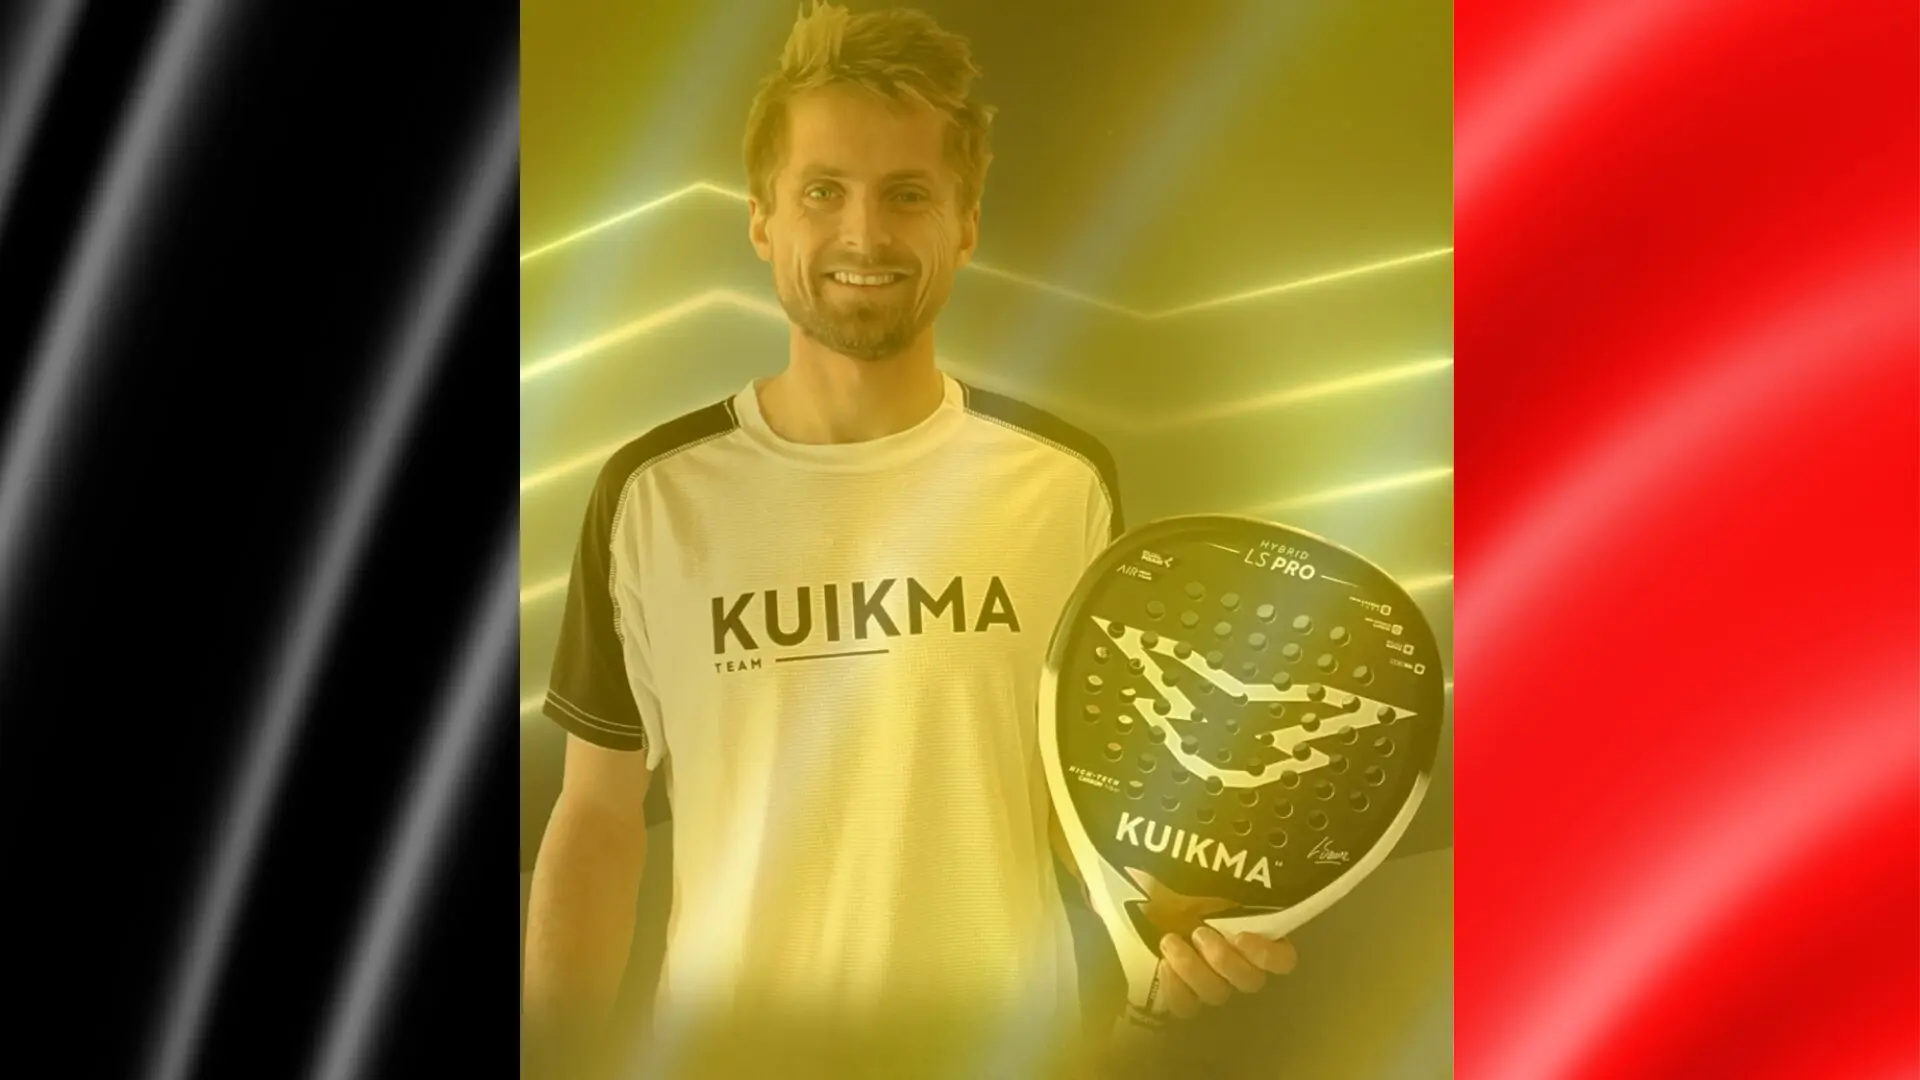 Belgian Clément Geens joins Kuikma!